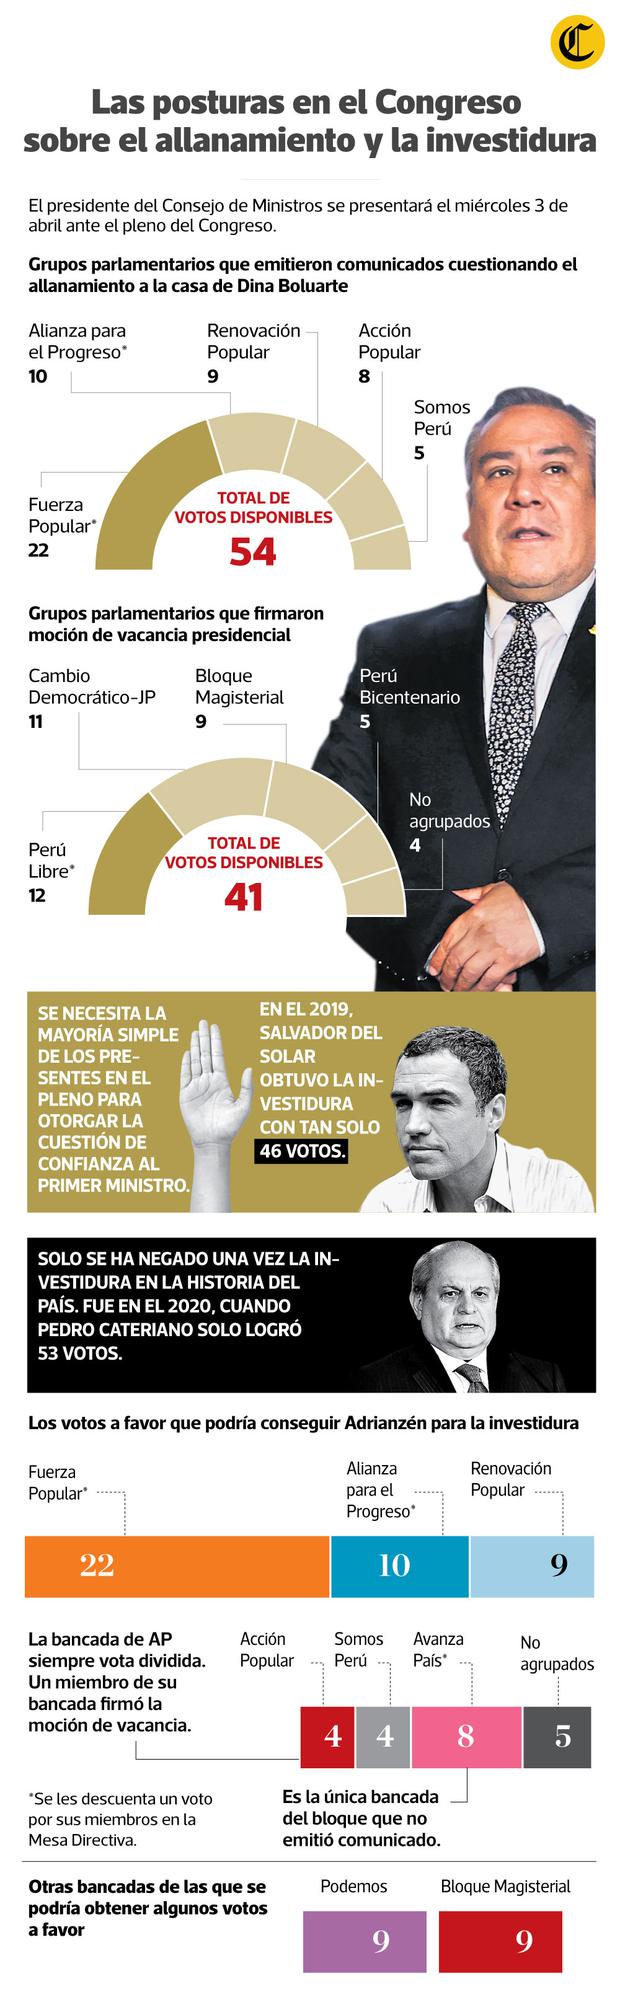 Las bancadas del bloque de derecha que podrían darle los votos necesarios a Gustavo Adrianzén para la sesión de investidura del próximo 3 de abril.